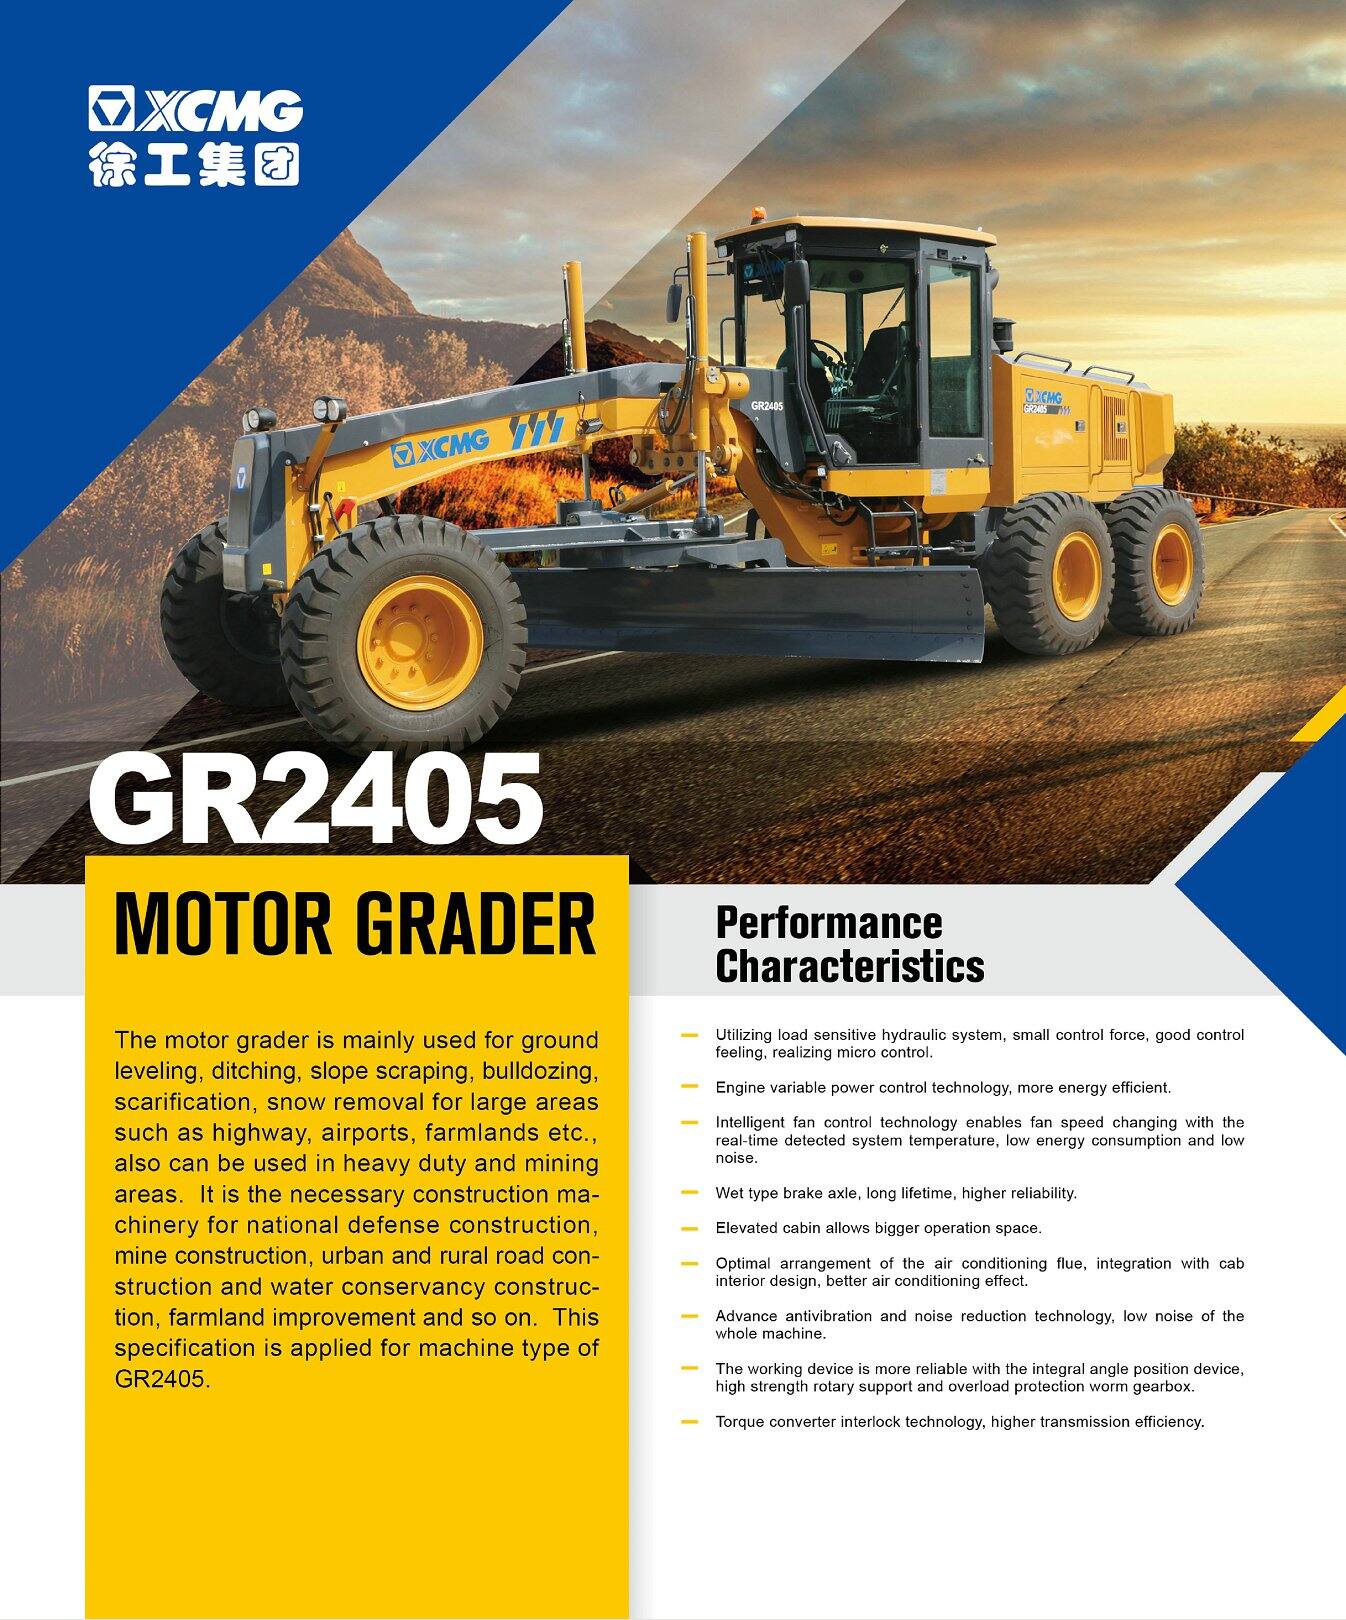 XCMG Official GR2405 Motor Grader for sale